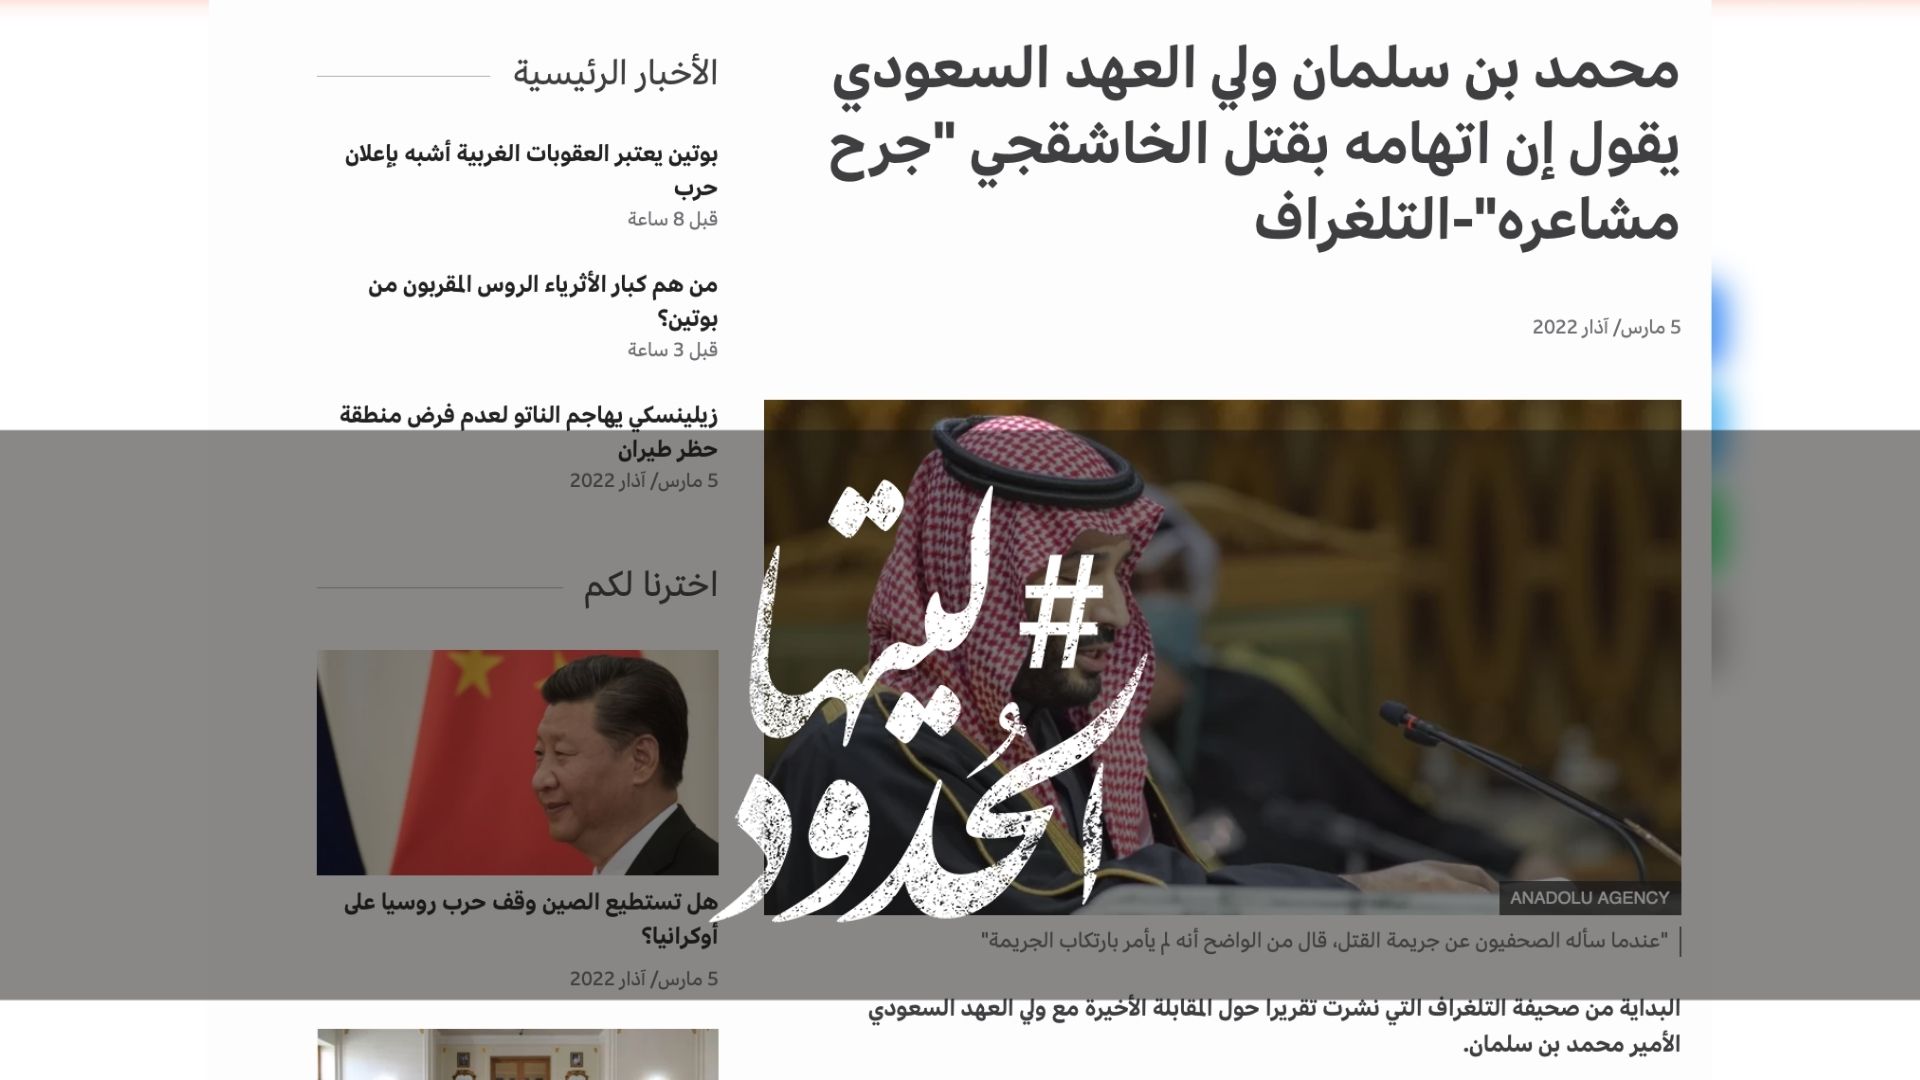 صورة محمد بن سلمان ولي العهد السعودي يقول إن اتهامه بقتل الخاشقجي "جرح مشاعره"-التلغراف